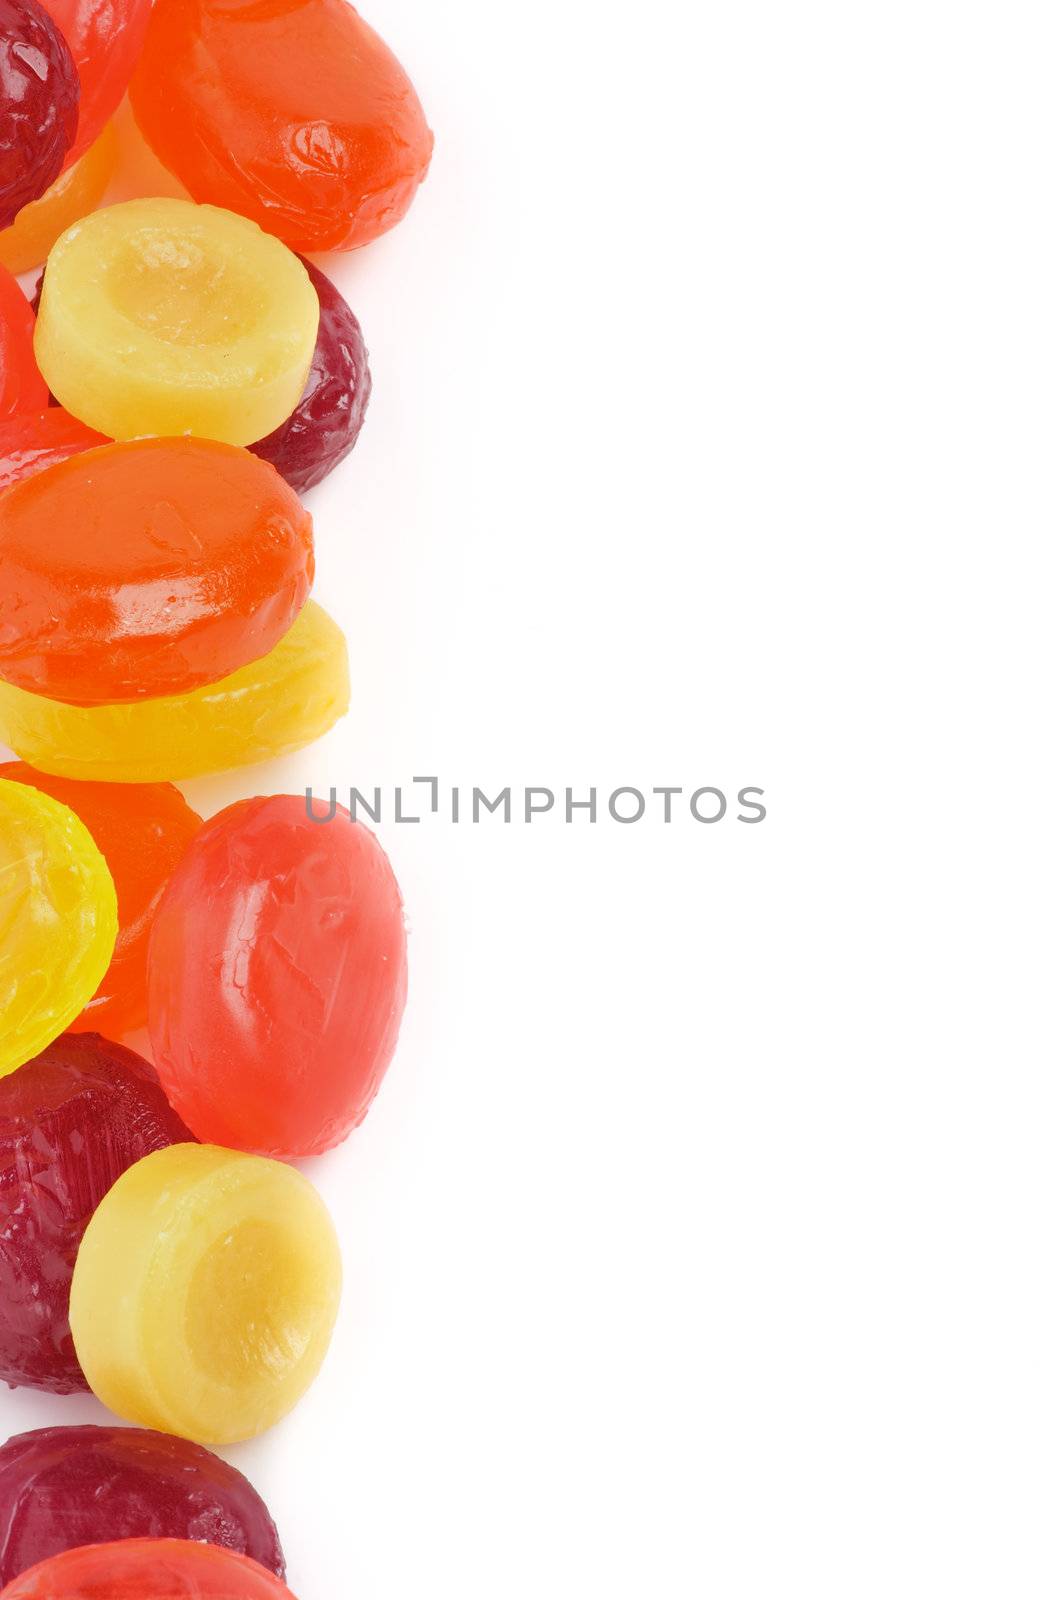 Fruit Drops Frame by zhekos